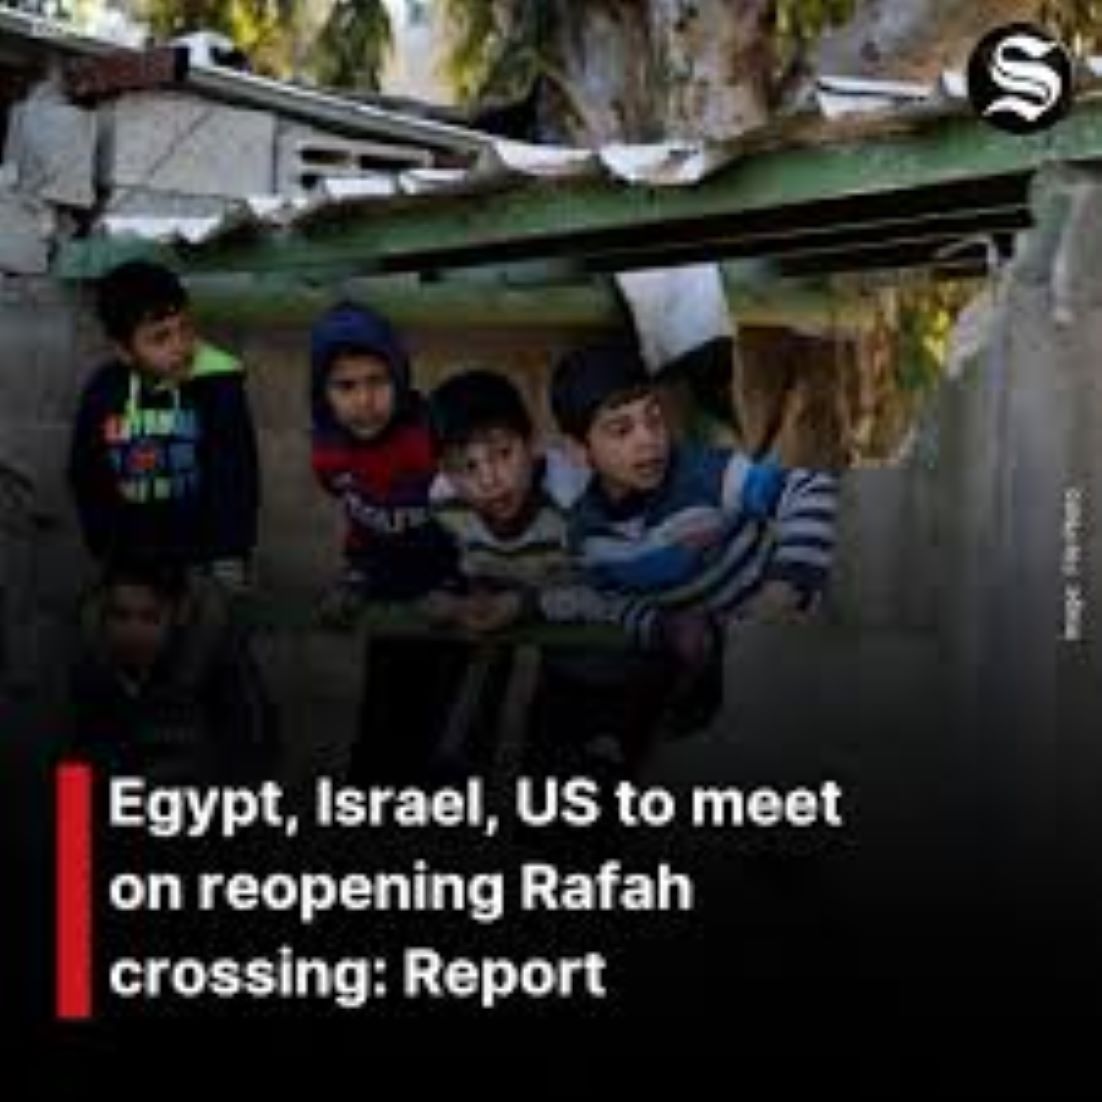 Egypt, Israel, U.S. To Meet On Reopening Rafah Crossing